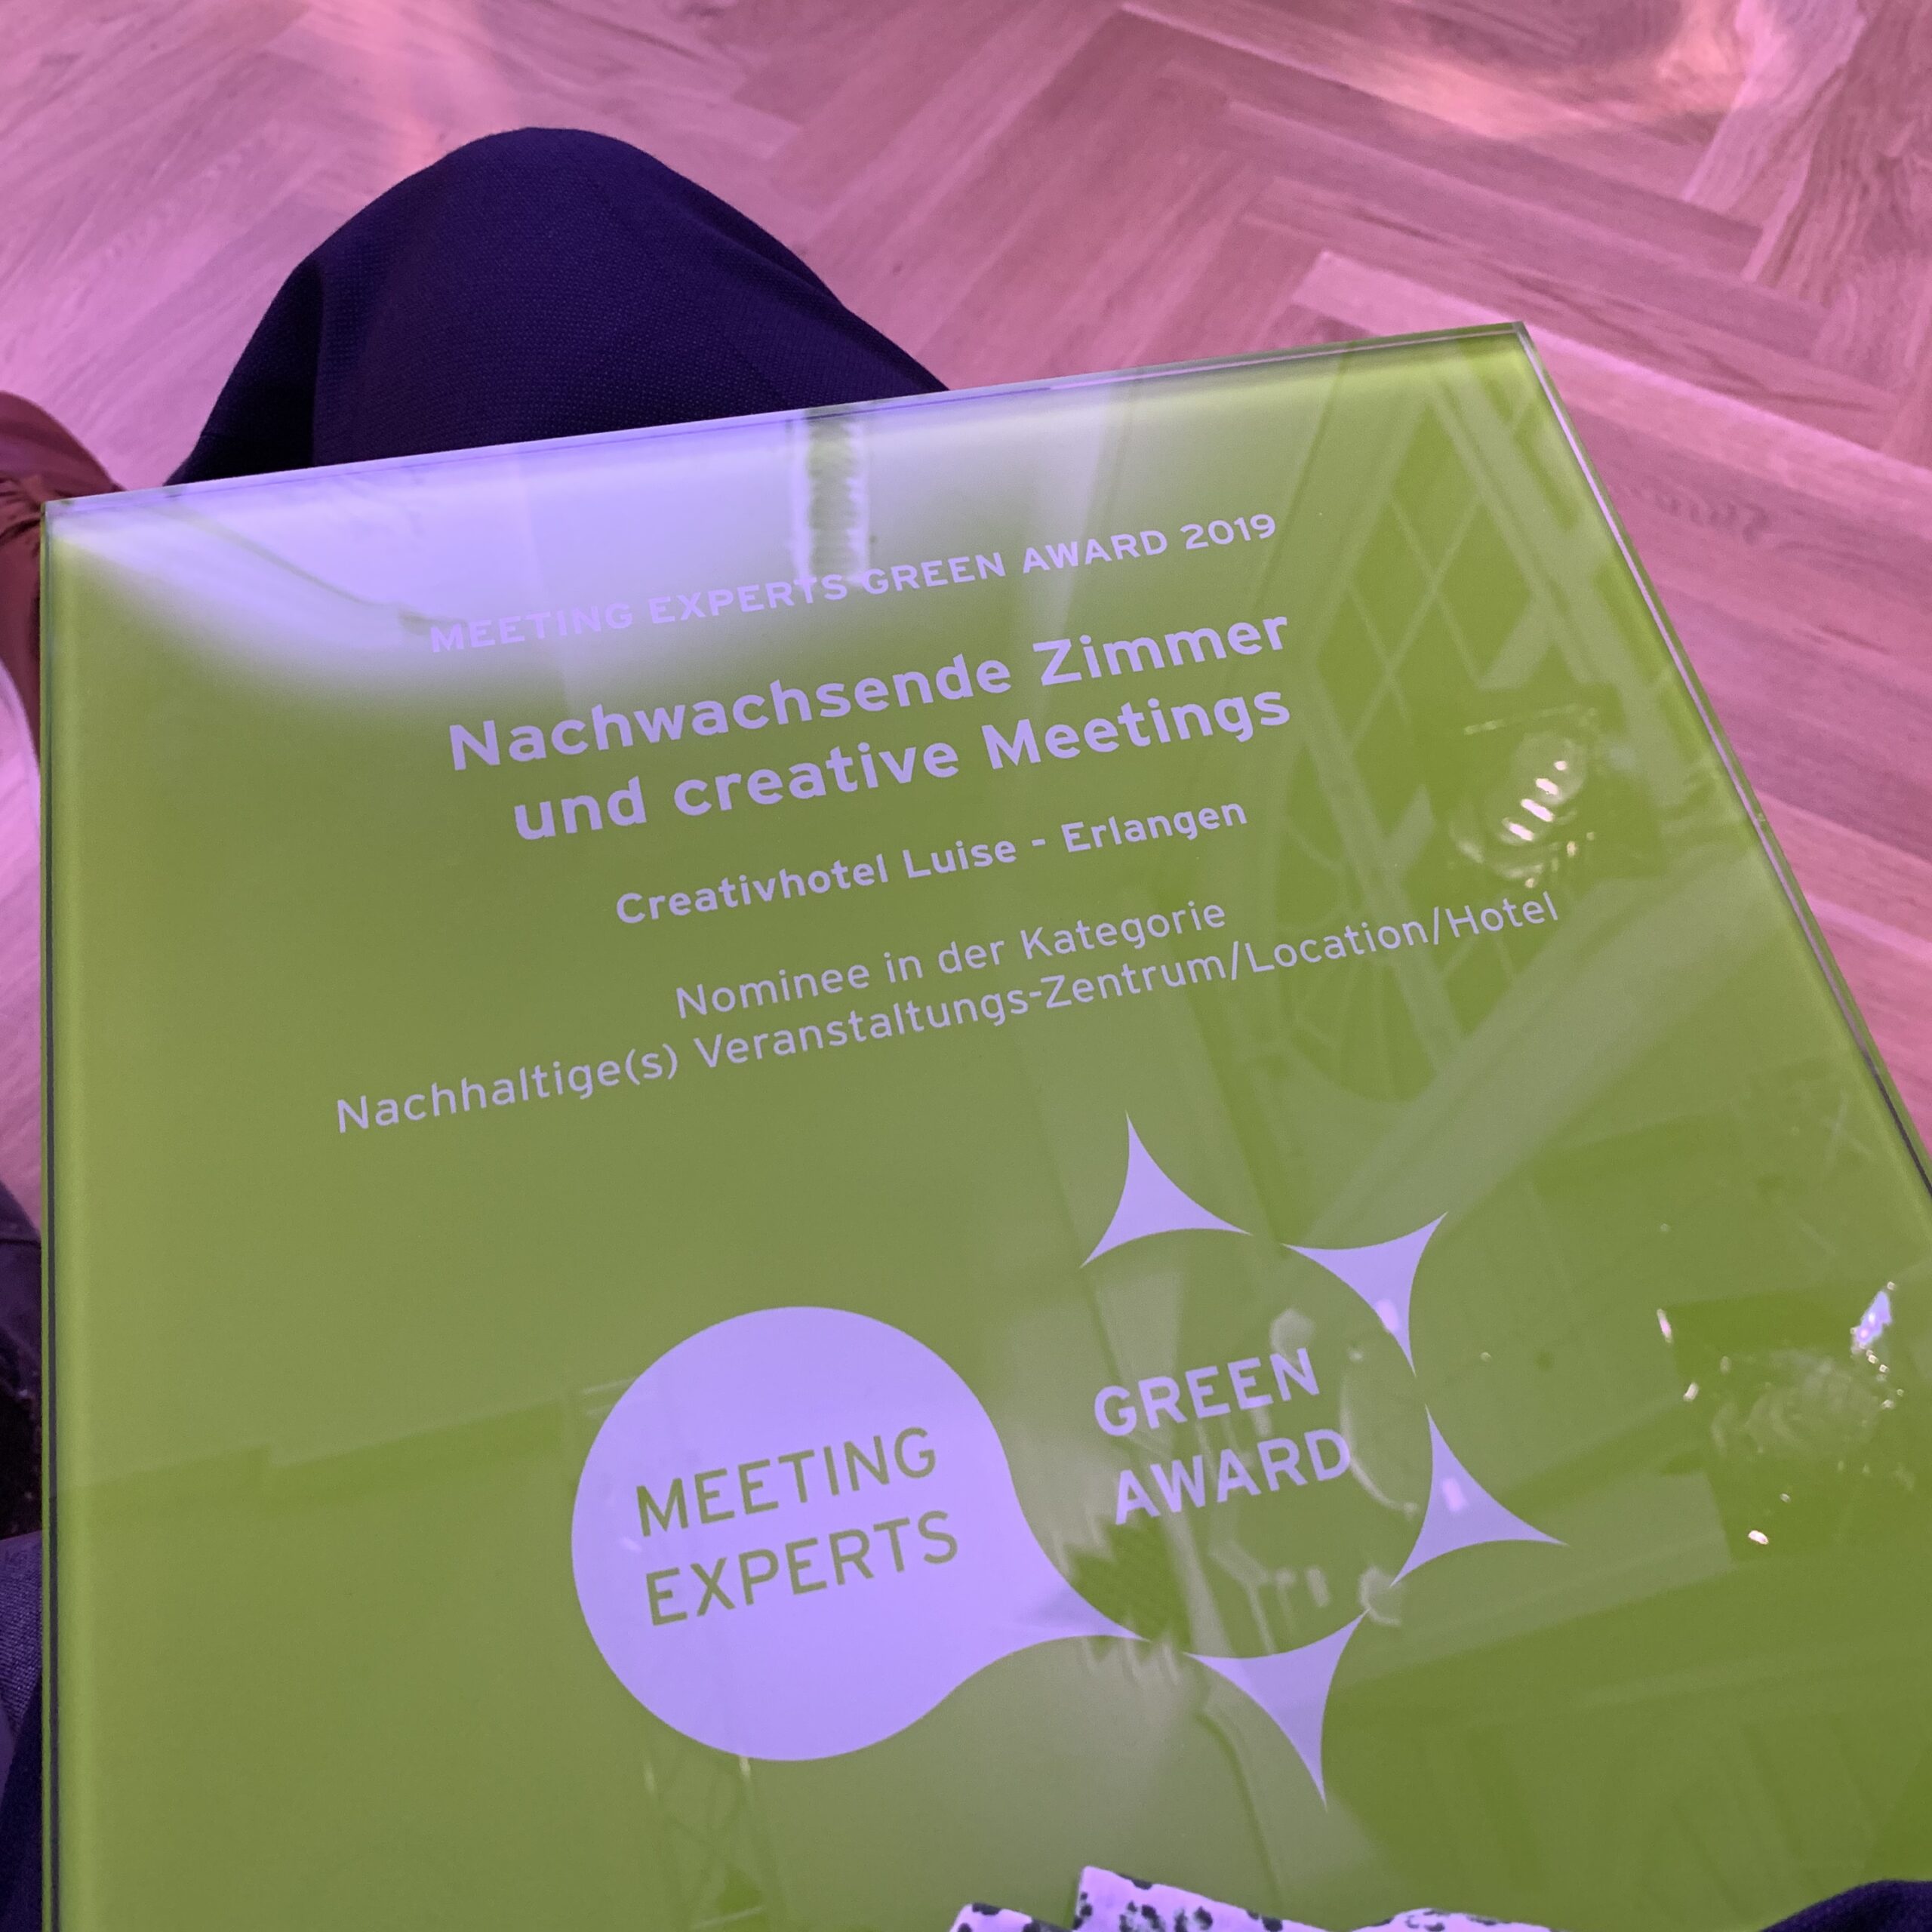 Meeting Experts Green Award für nachwachsende Zimmer und creative Meetings